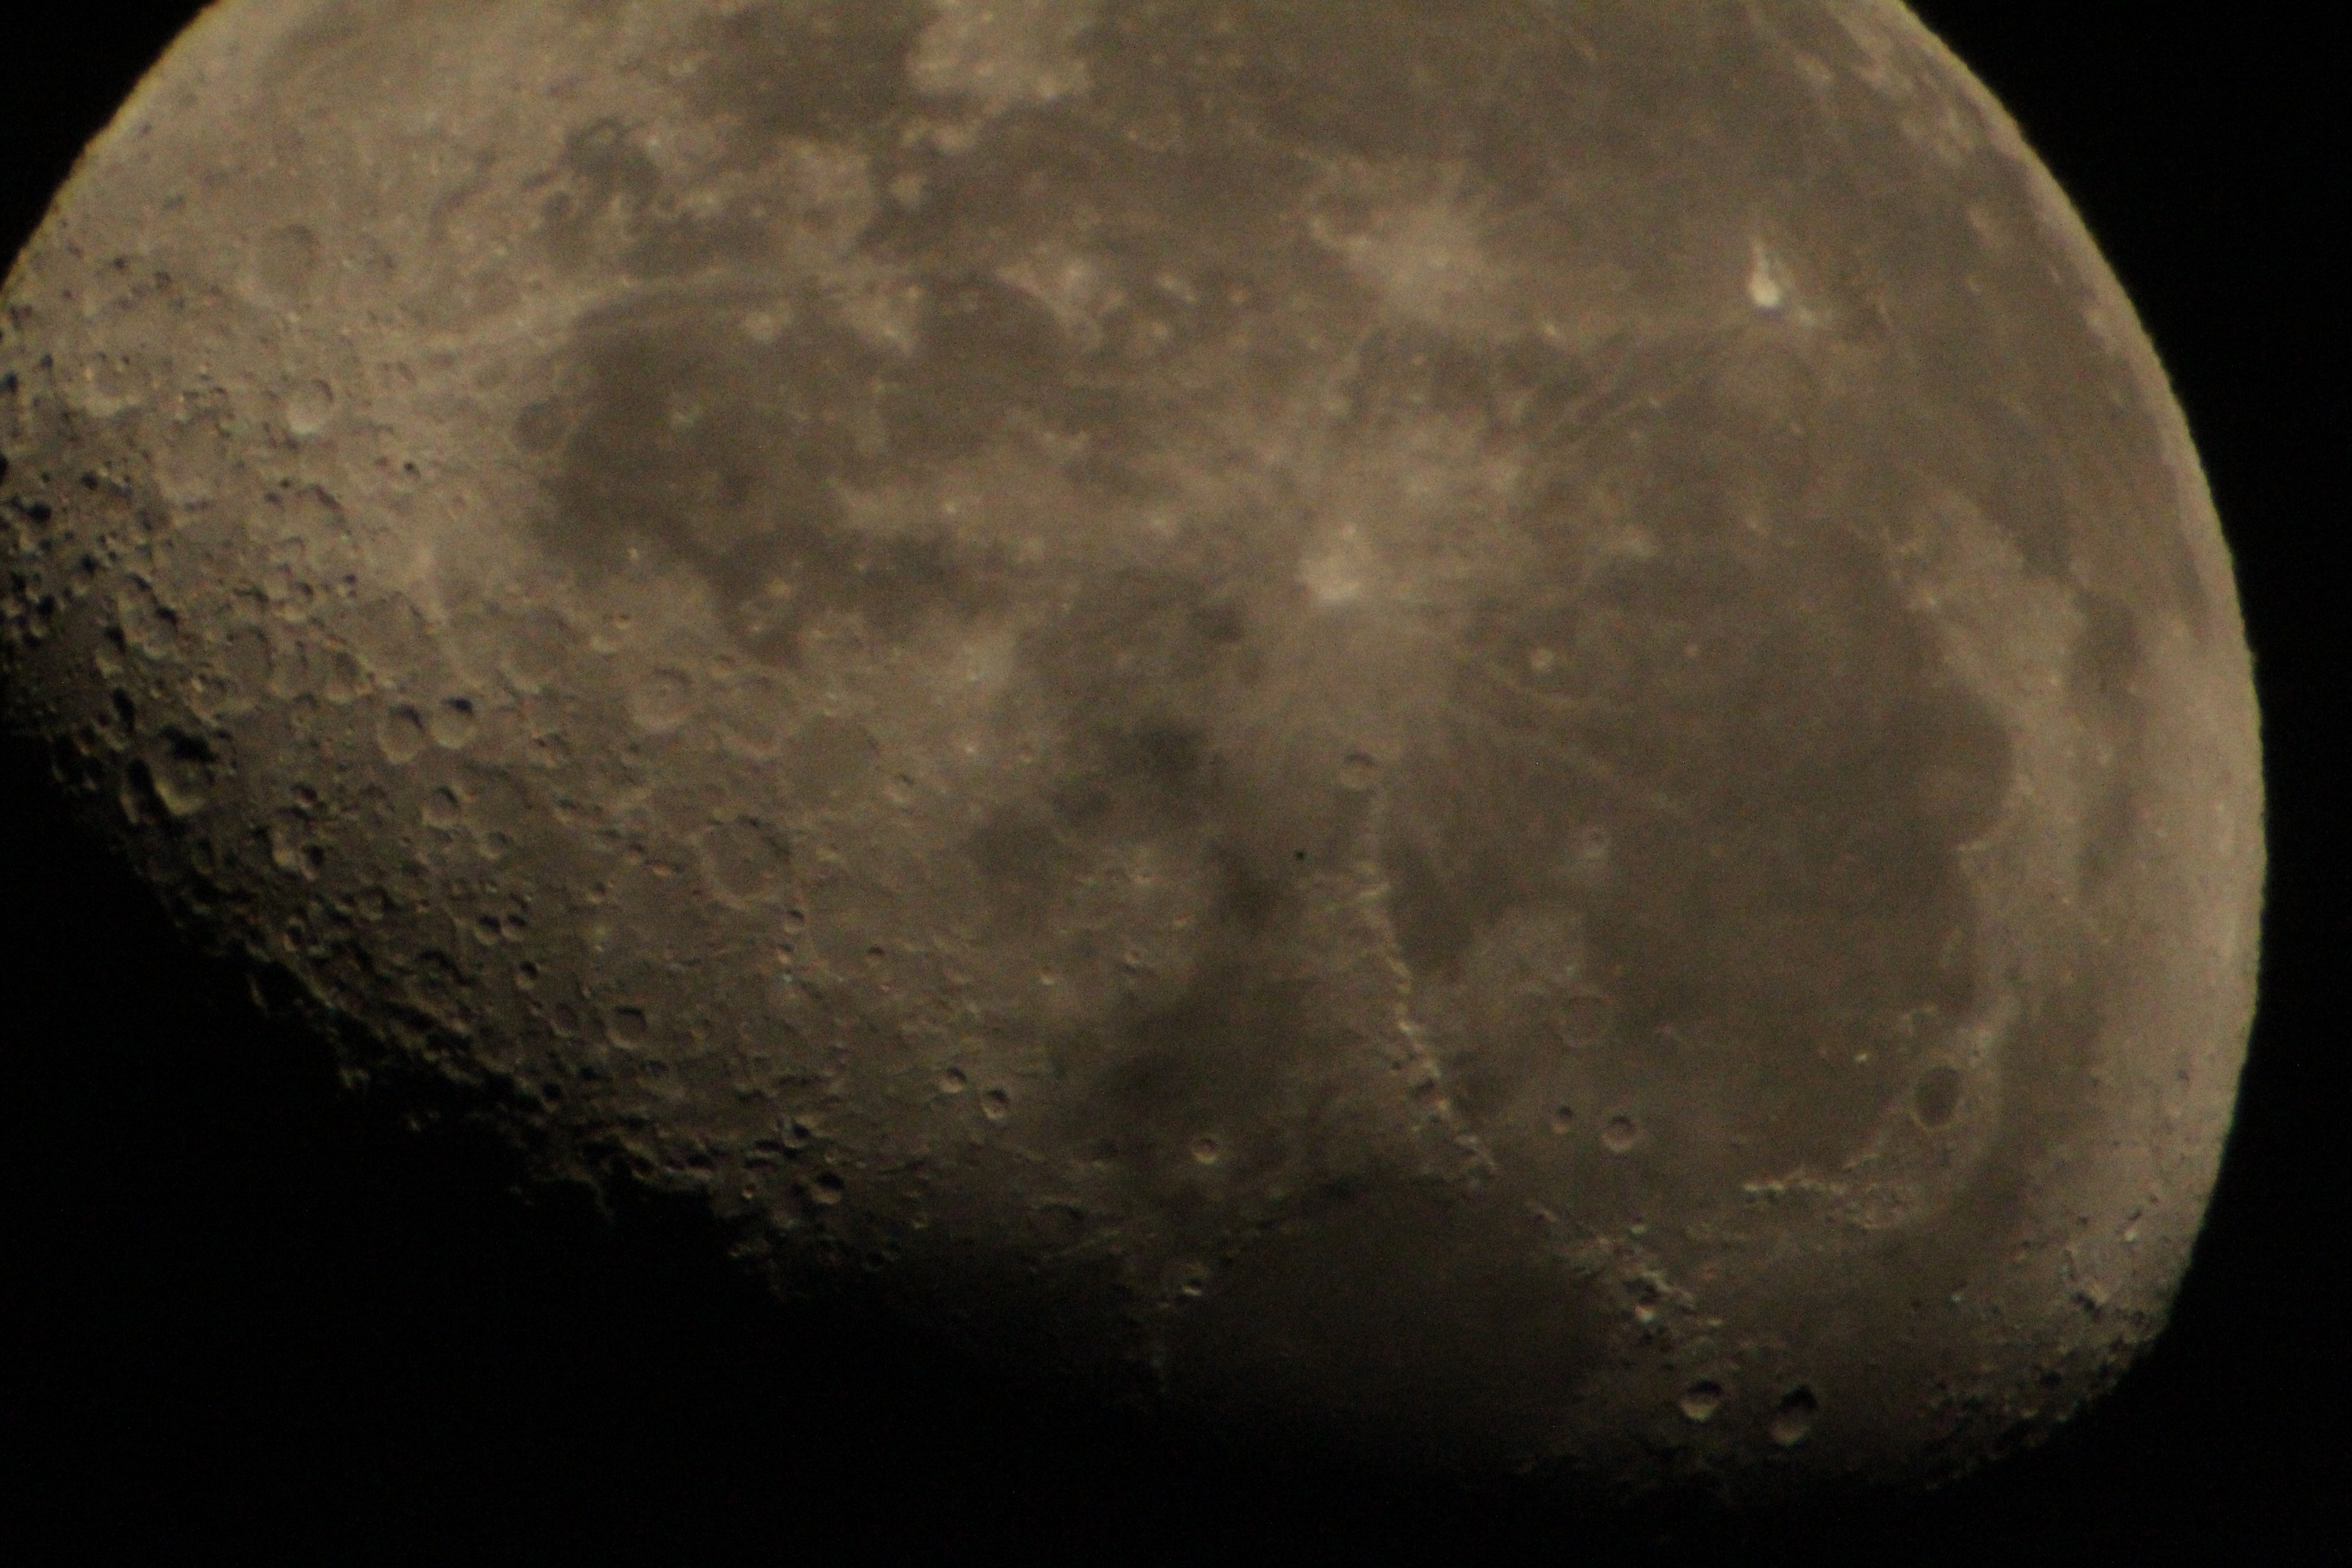 The moon taken through a Barlow lens.